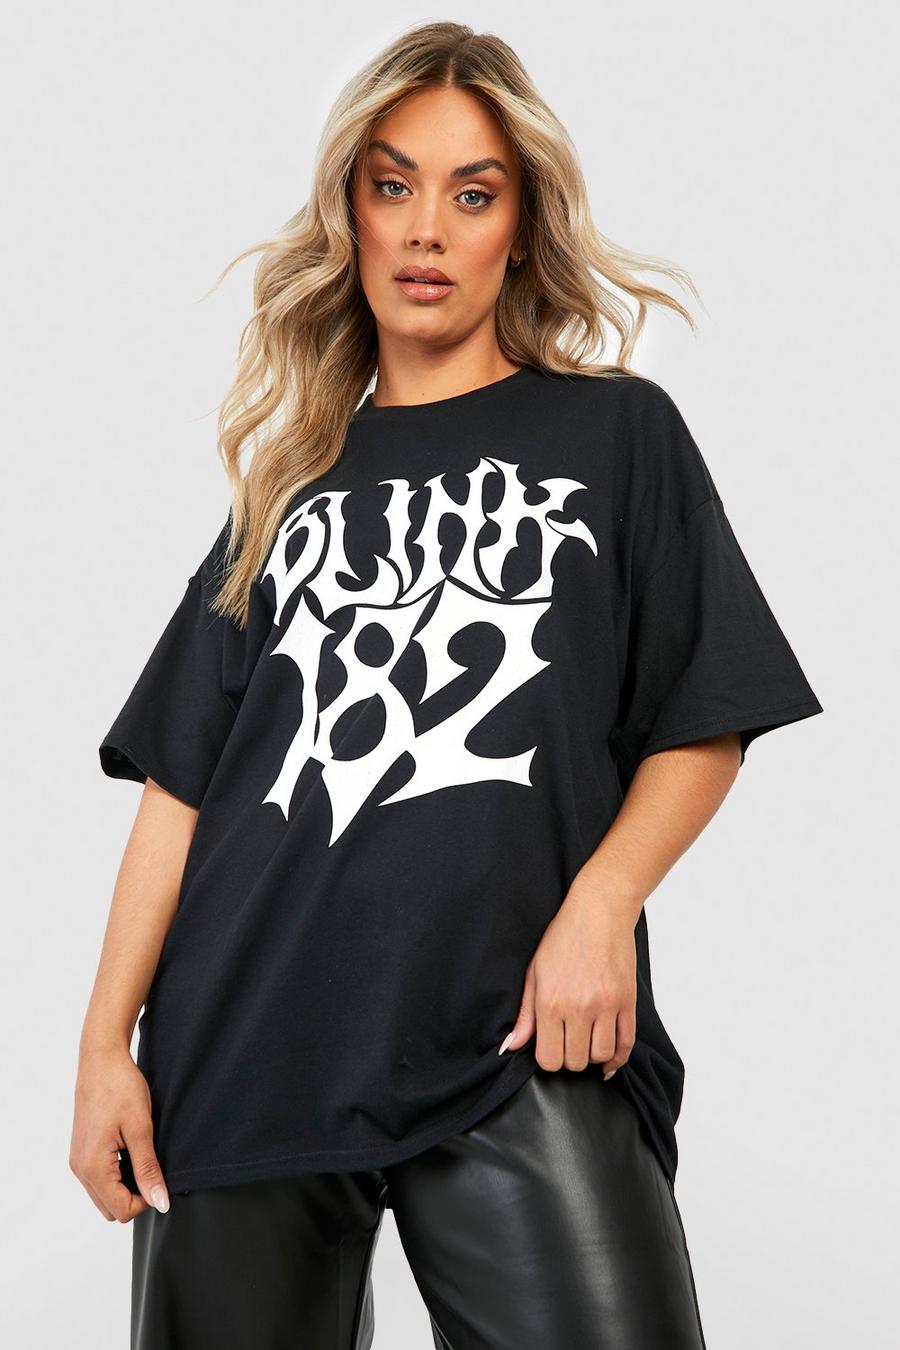 Black svart Plus Blink 182 Oversized t-shirt